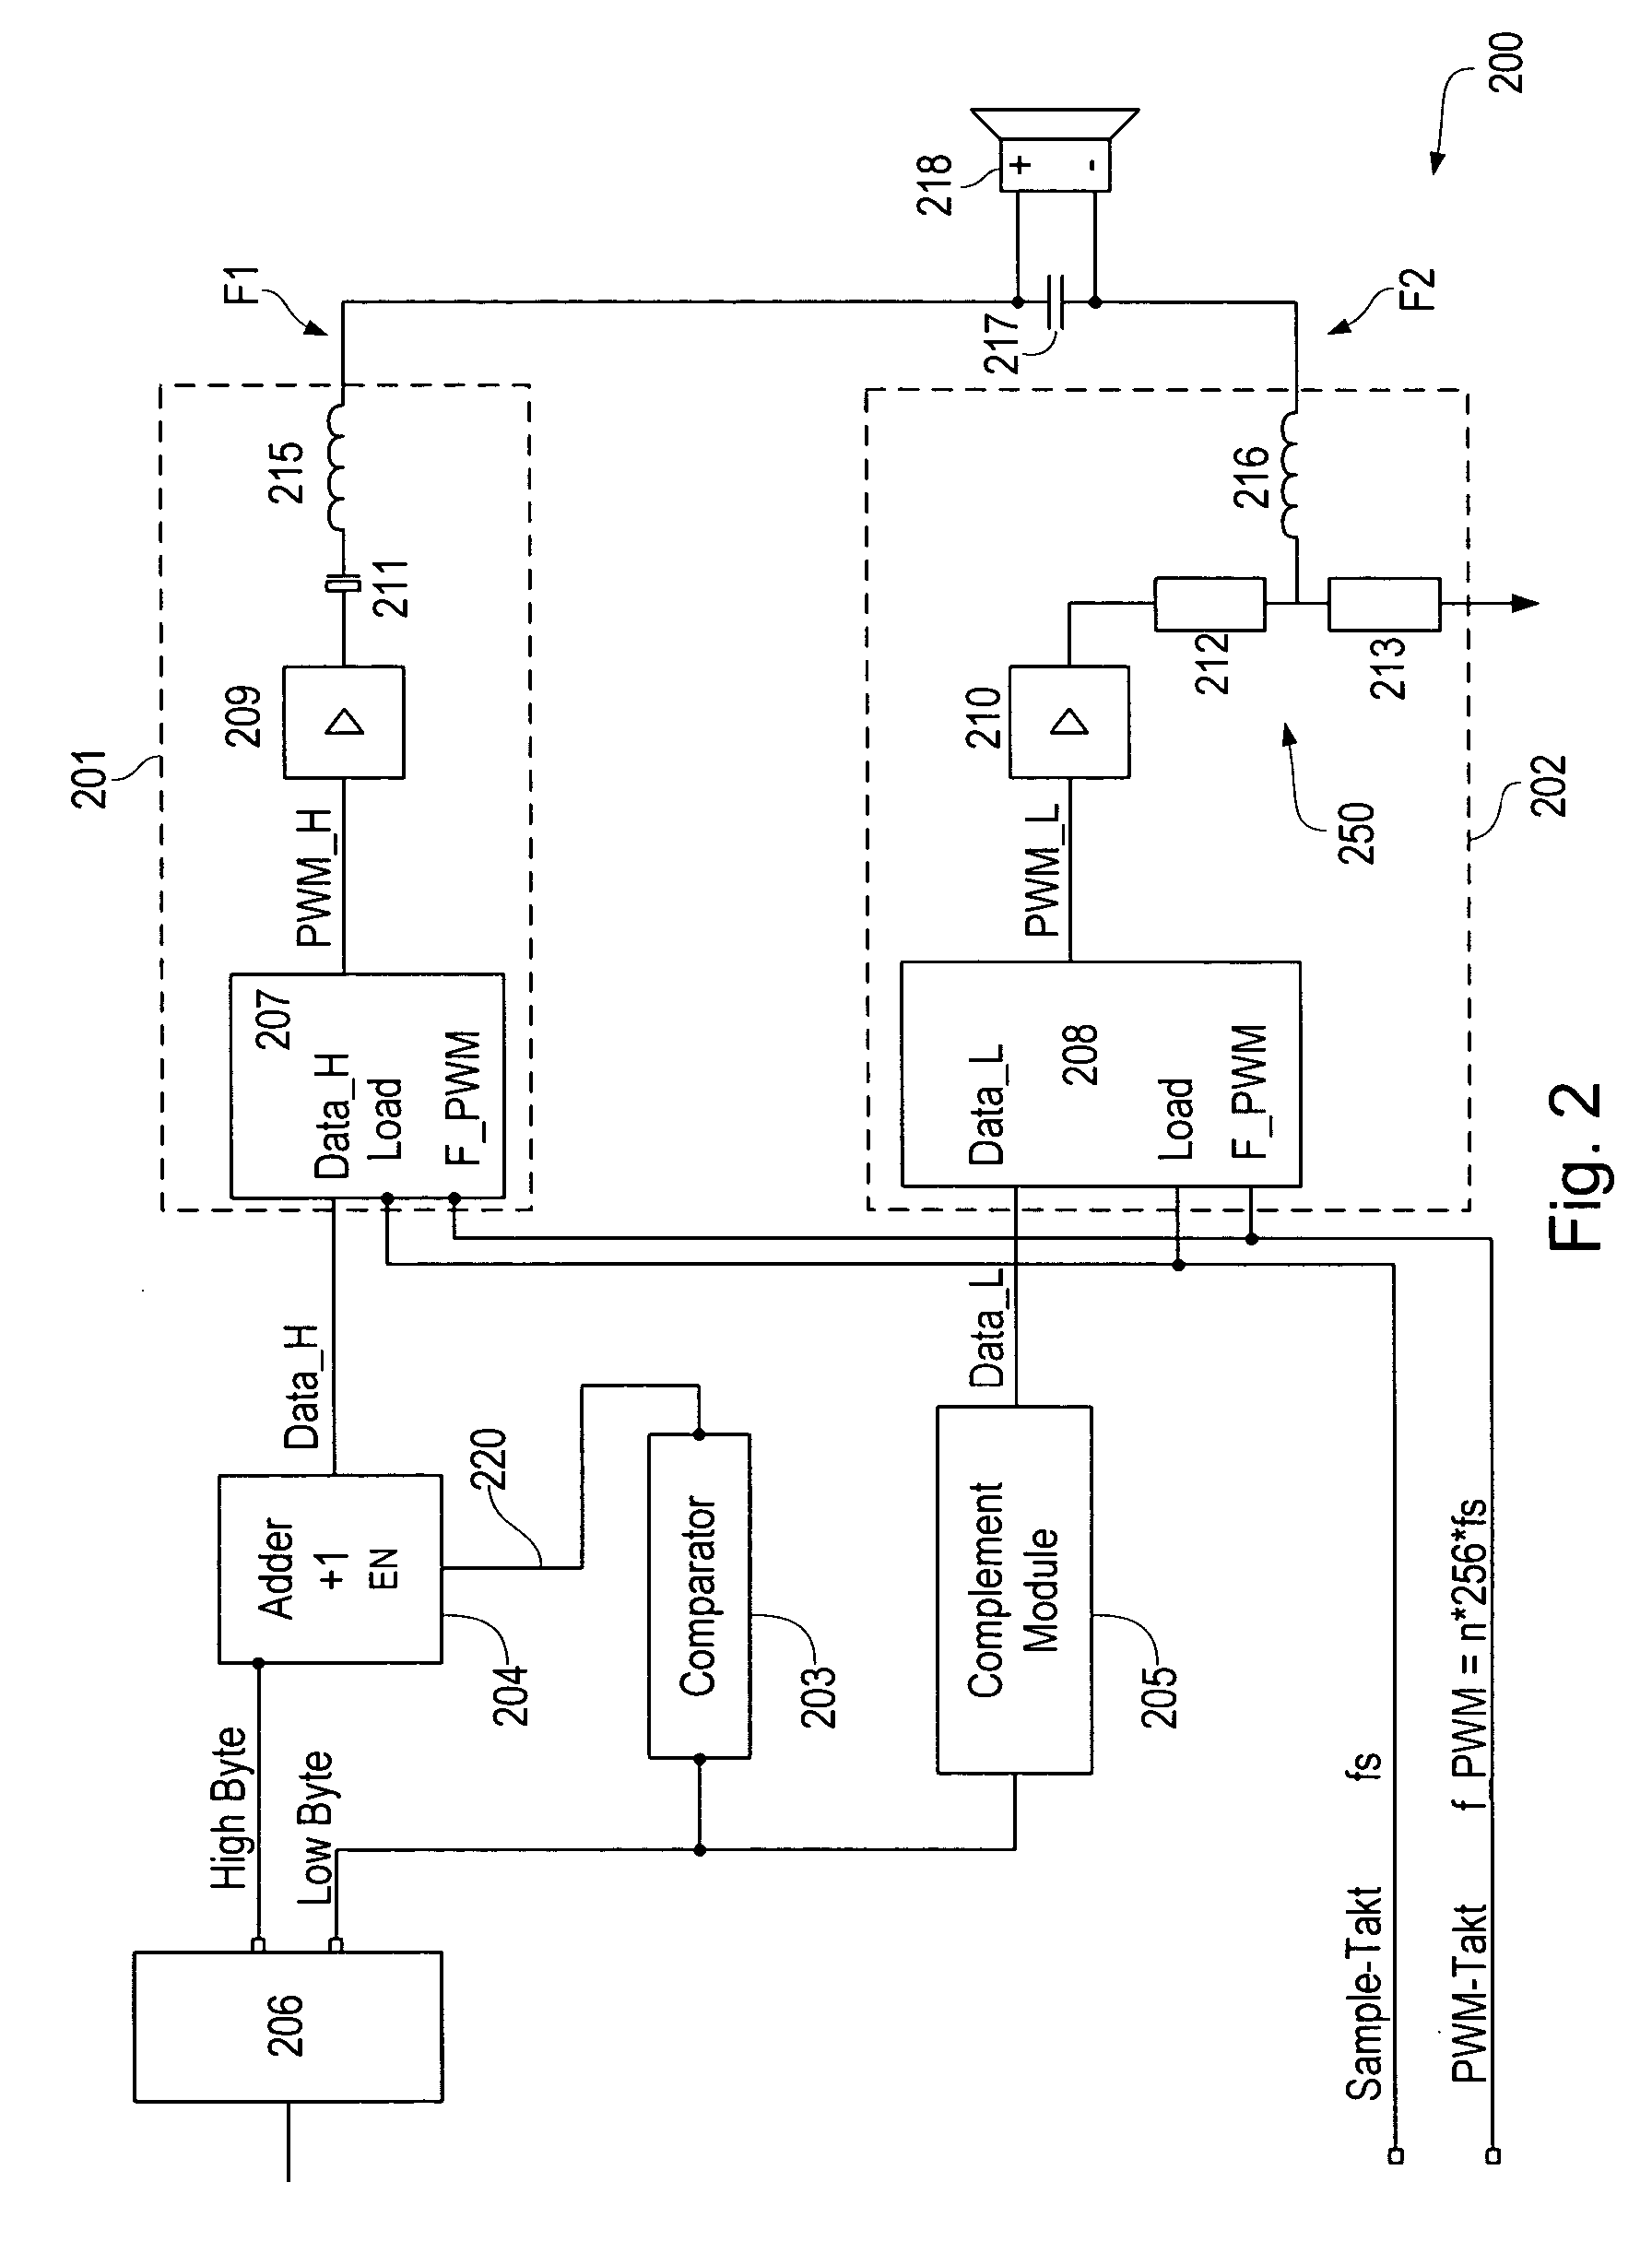 Loudspeaker control circuit